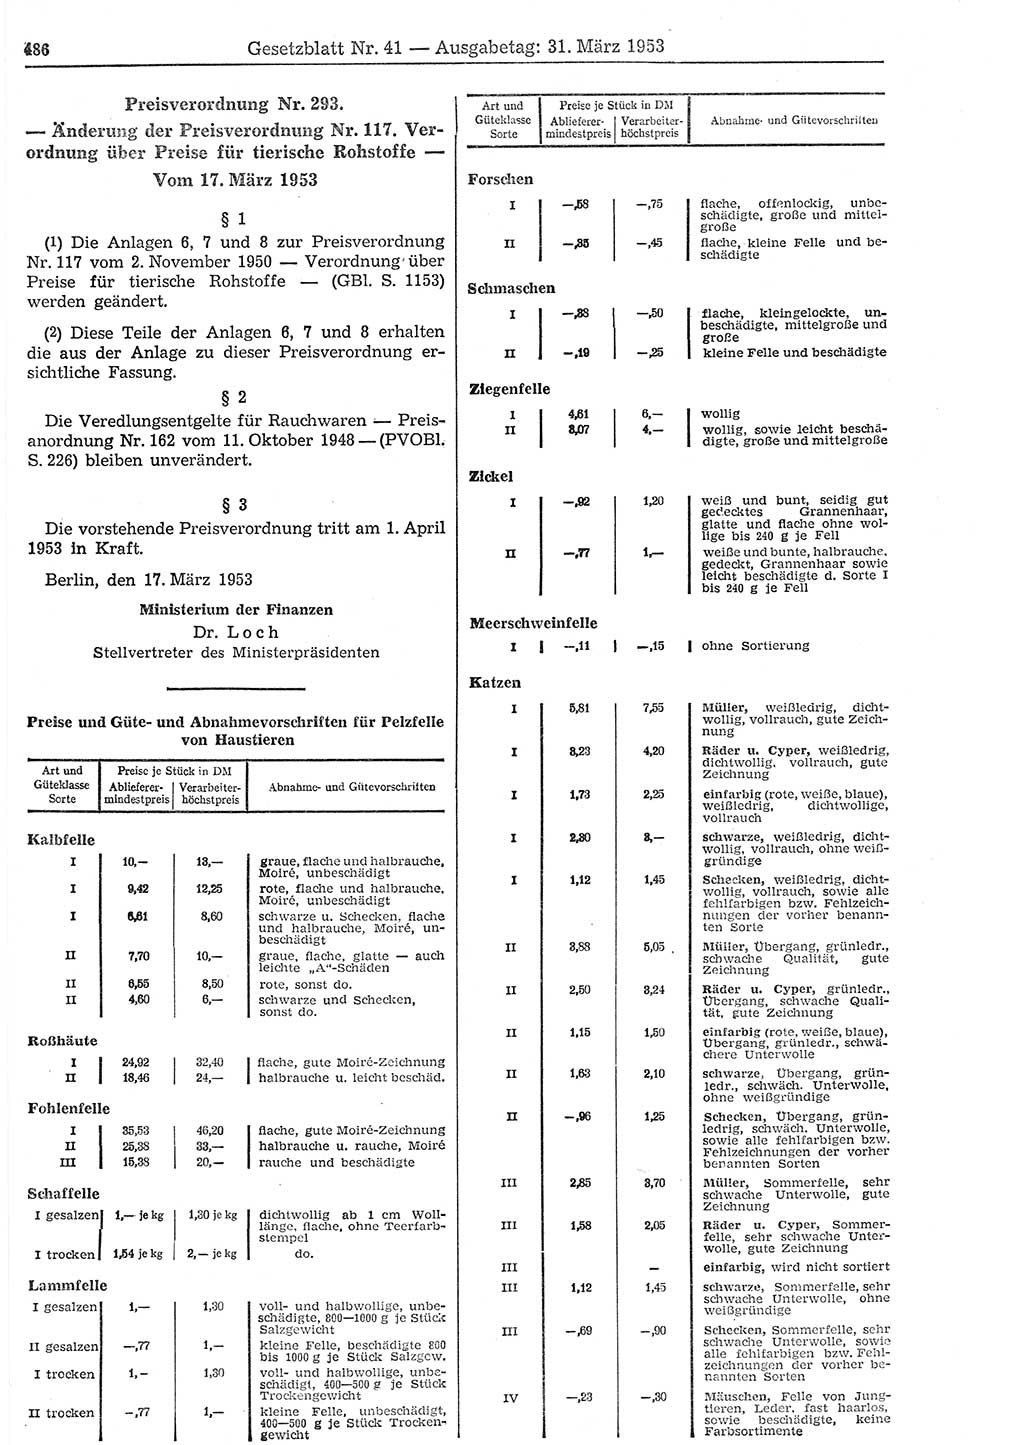 Gesetzblatt (GBl.) der Deutschen Demokratischen Republik (DDR) 1953, Seite 486 (GBl. DDR 1953, S. 486)